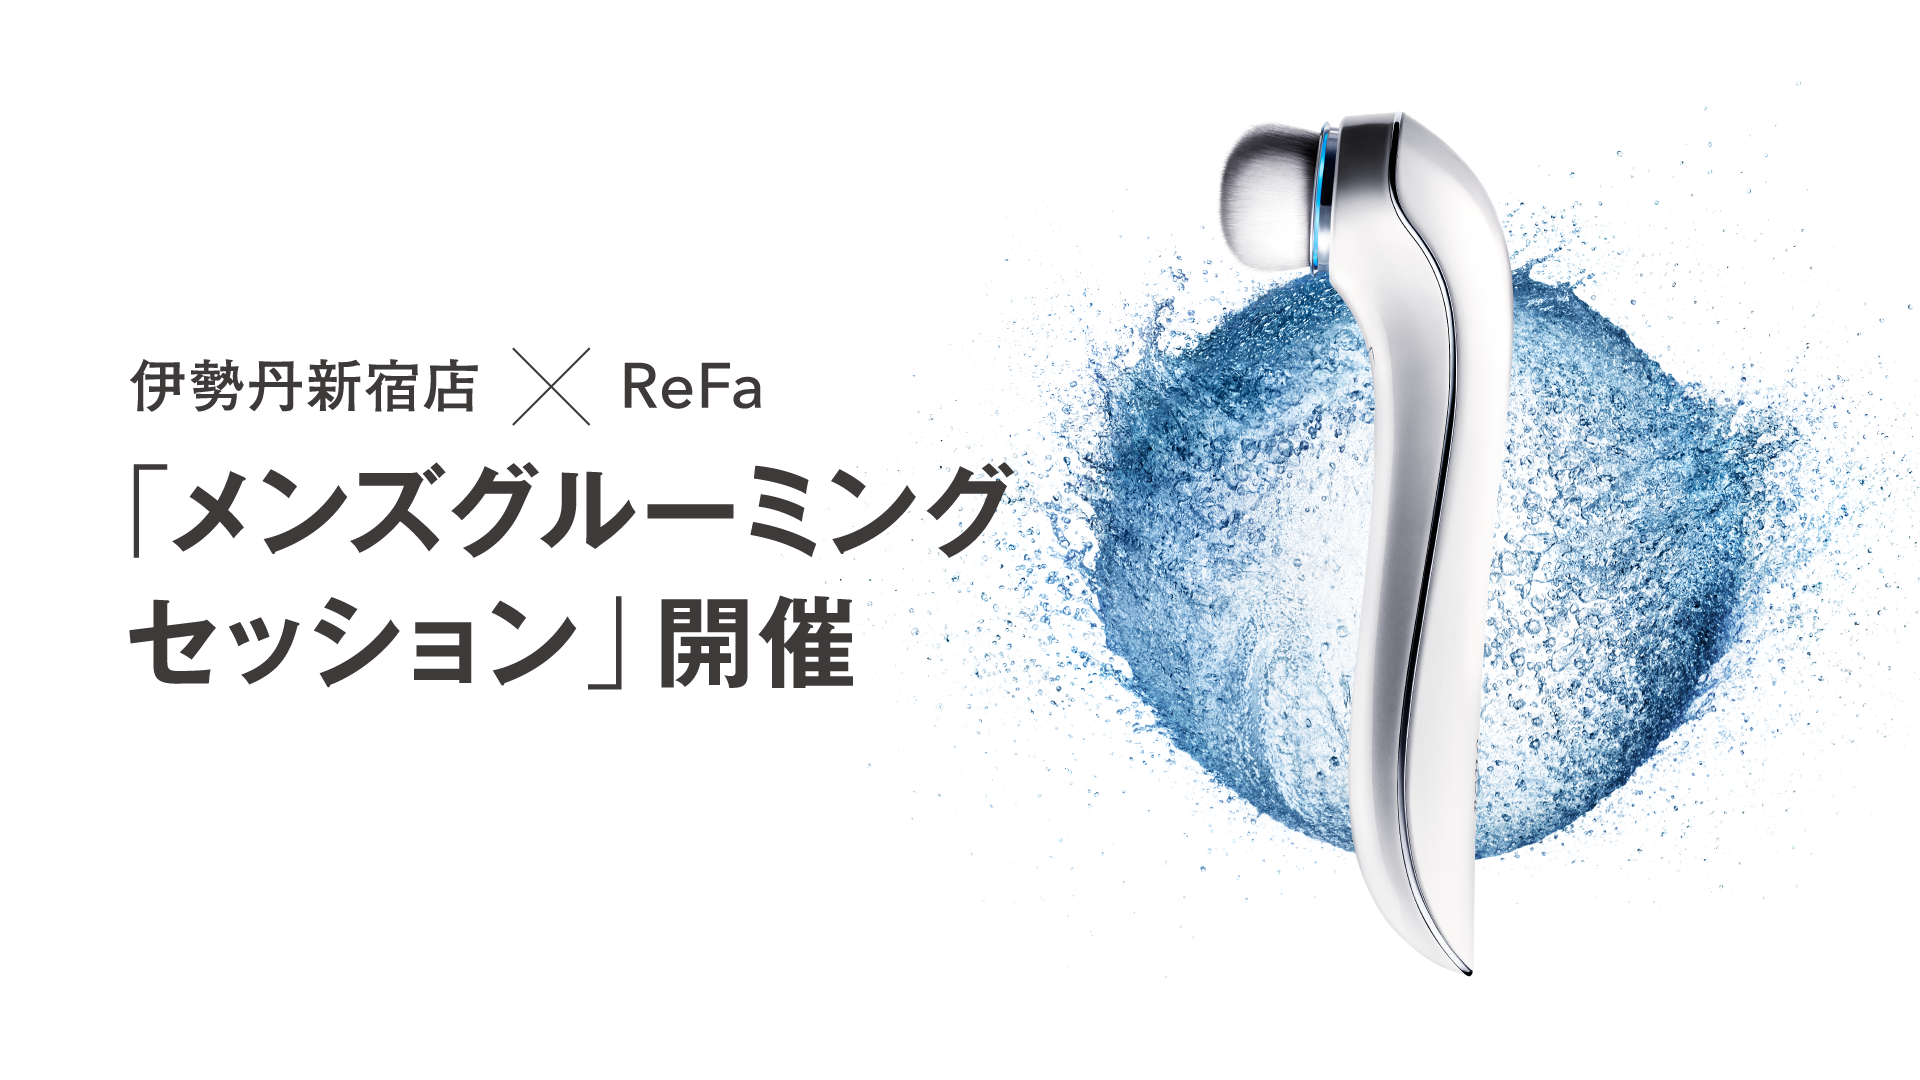 伊勢丹新宿店×ReFa 「メンズグルーミングセッション」開催します。